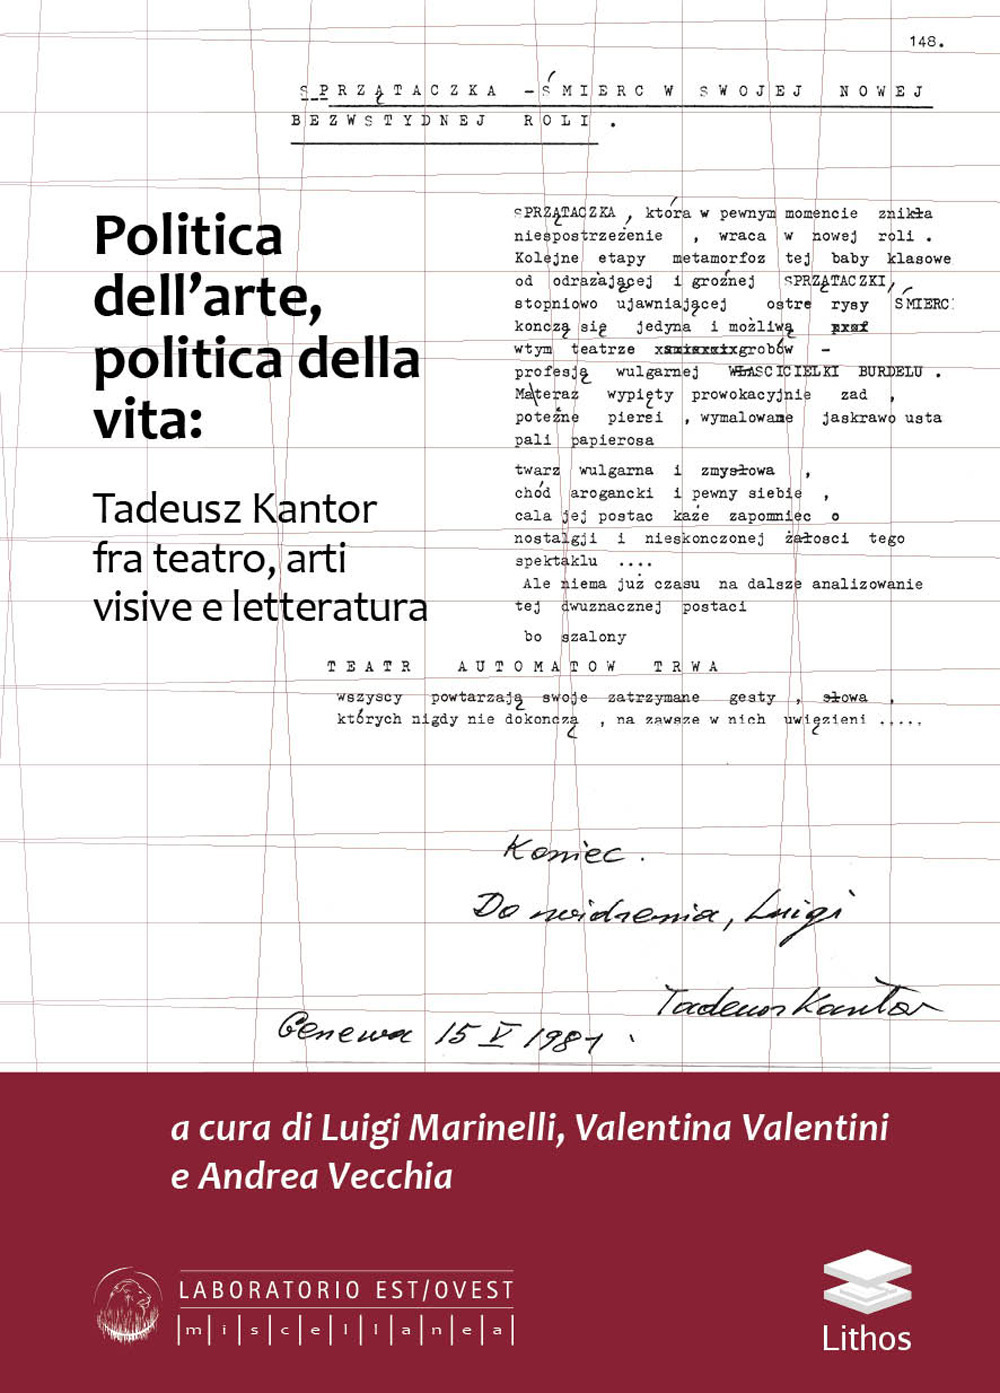 Politica dell'arte, politica della vita: Tadeusz Kantor fra teatro, arti visive e letteratura